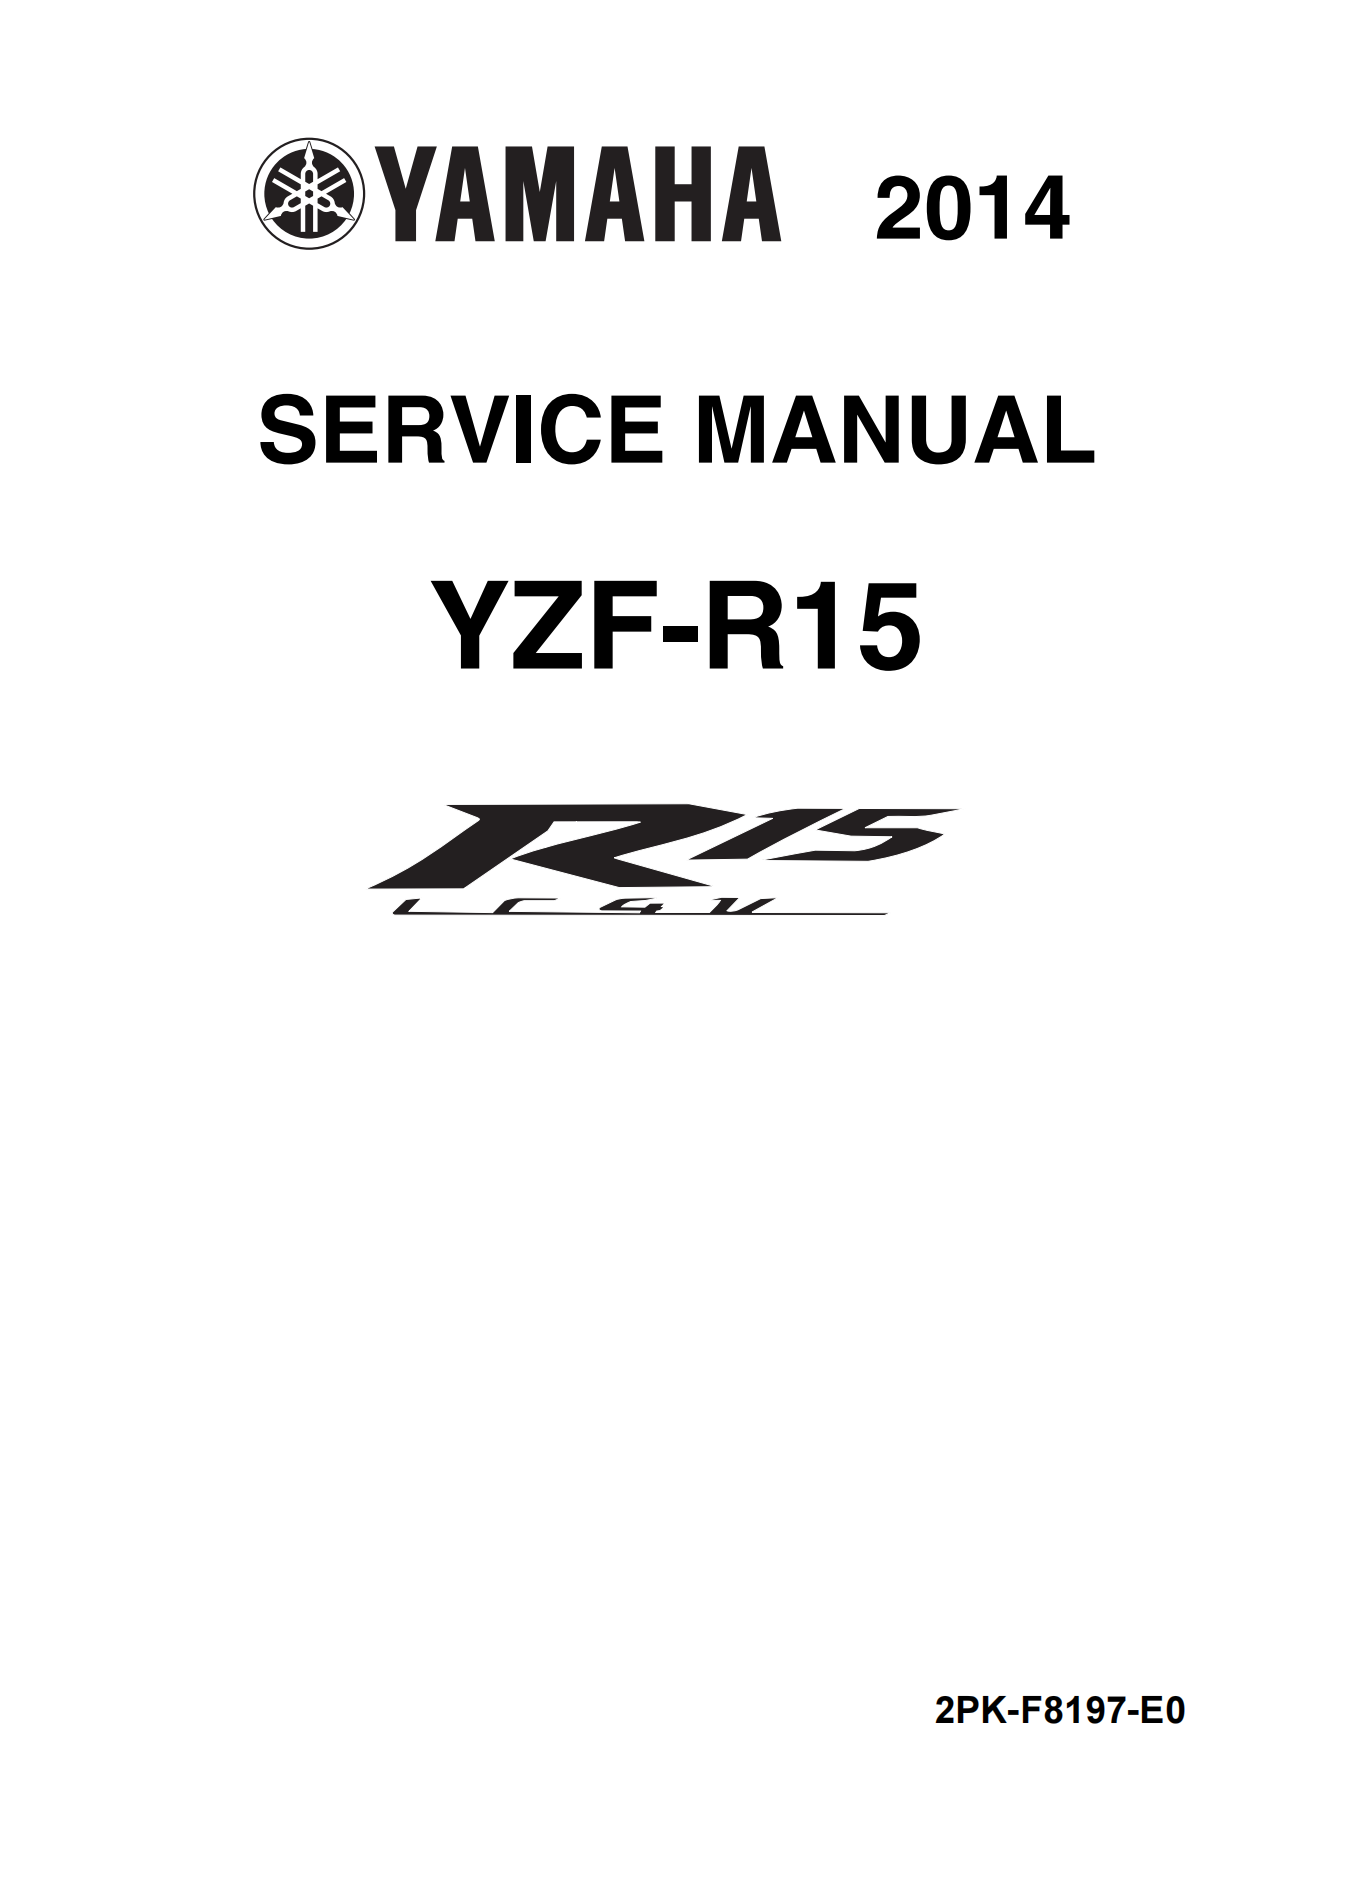 原版英文2014-2018年雅马哈r15维修手册 yamaha yzf-r15维修手册插图